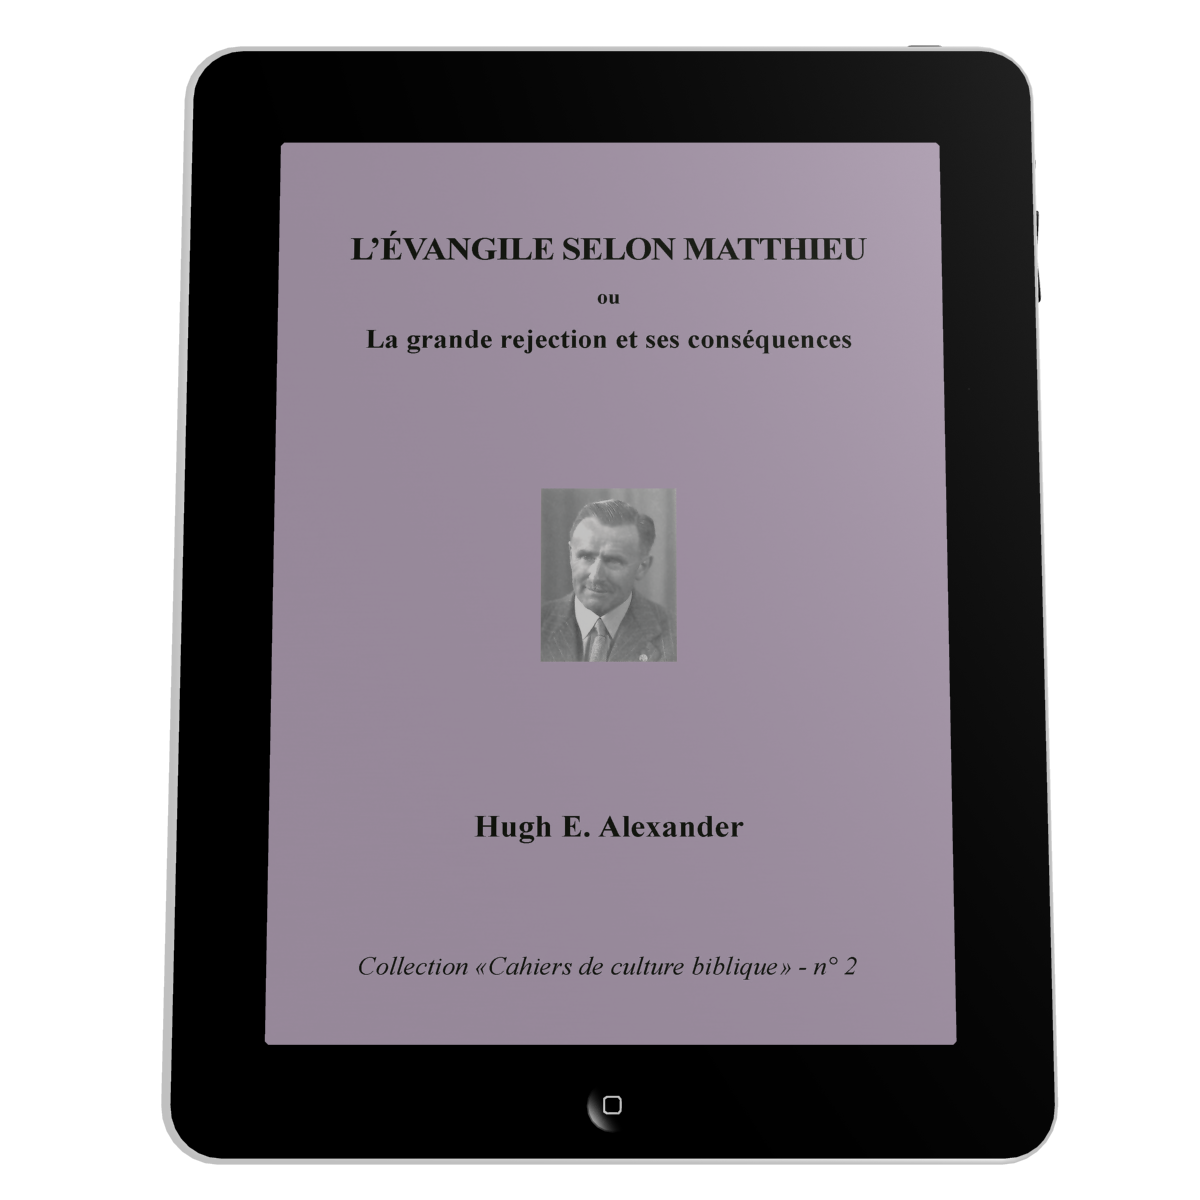 Evangile selon Matthieu (L') - La grande rejection et ses conséquences, Collection: cahiers de culture biblique, n°2 - Ebook